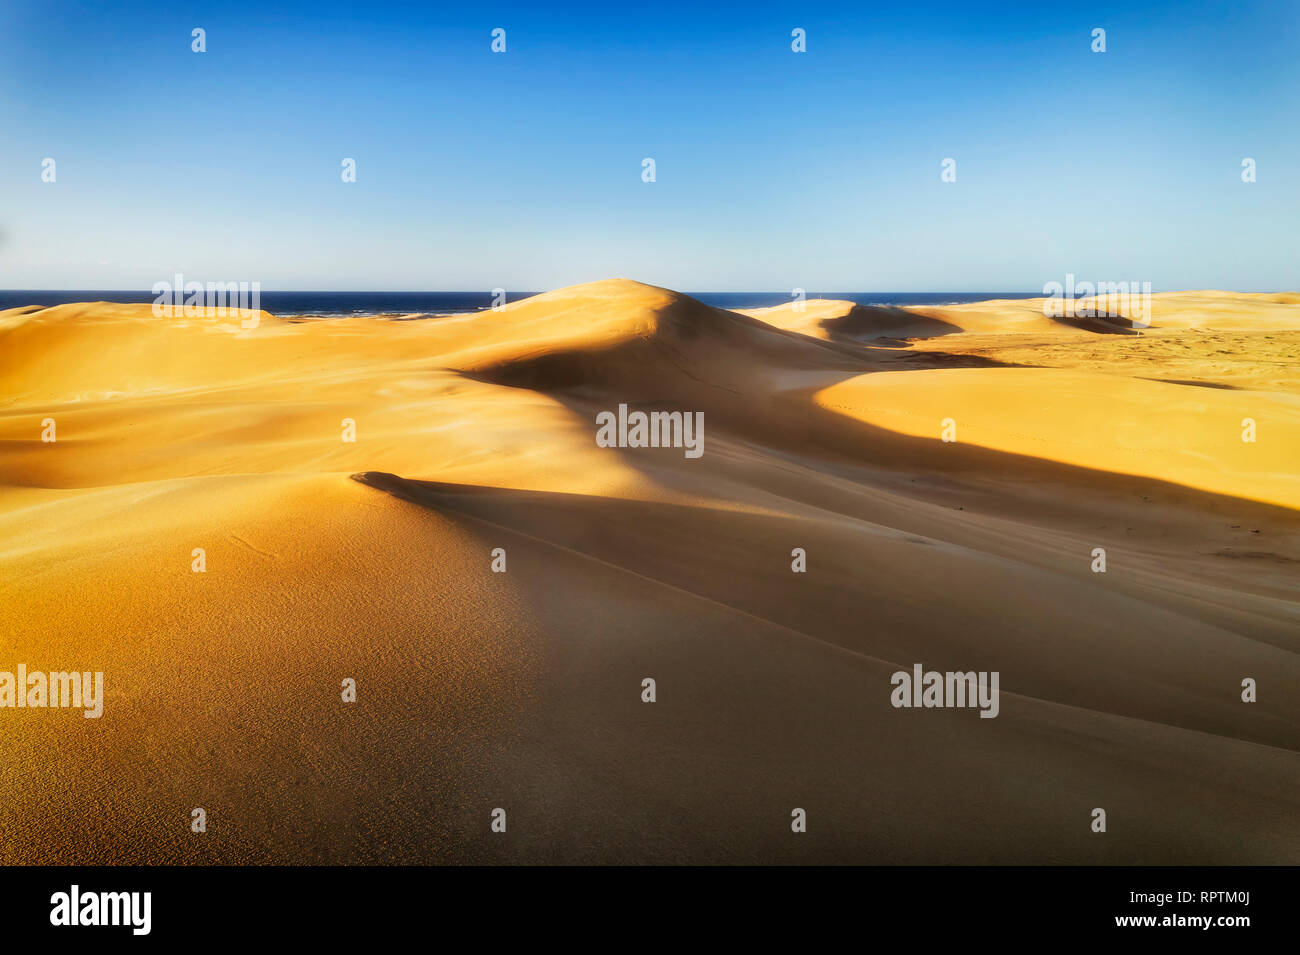 Sol amarillo encendido sands en clima árido desierto de dunas alrededor de Stockton Beach en la costa del Pacífico de Australia - vista contra el horizonte azul mar bajo sk Foto de stock